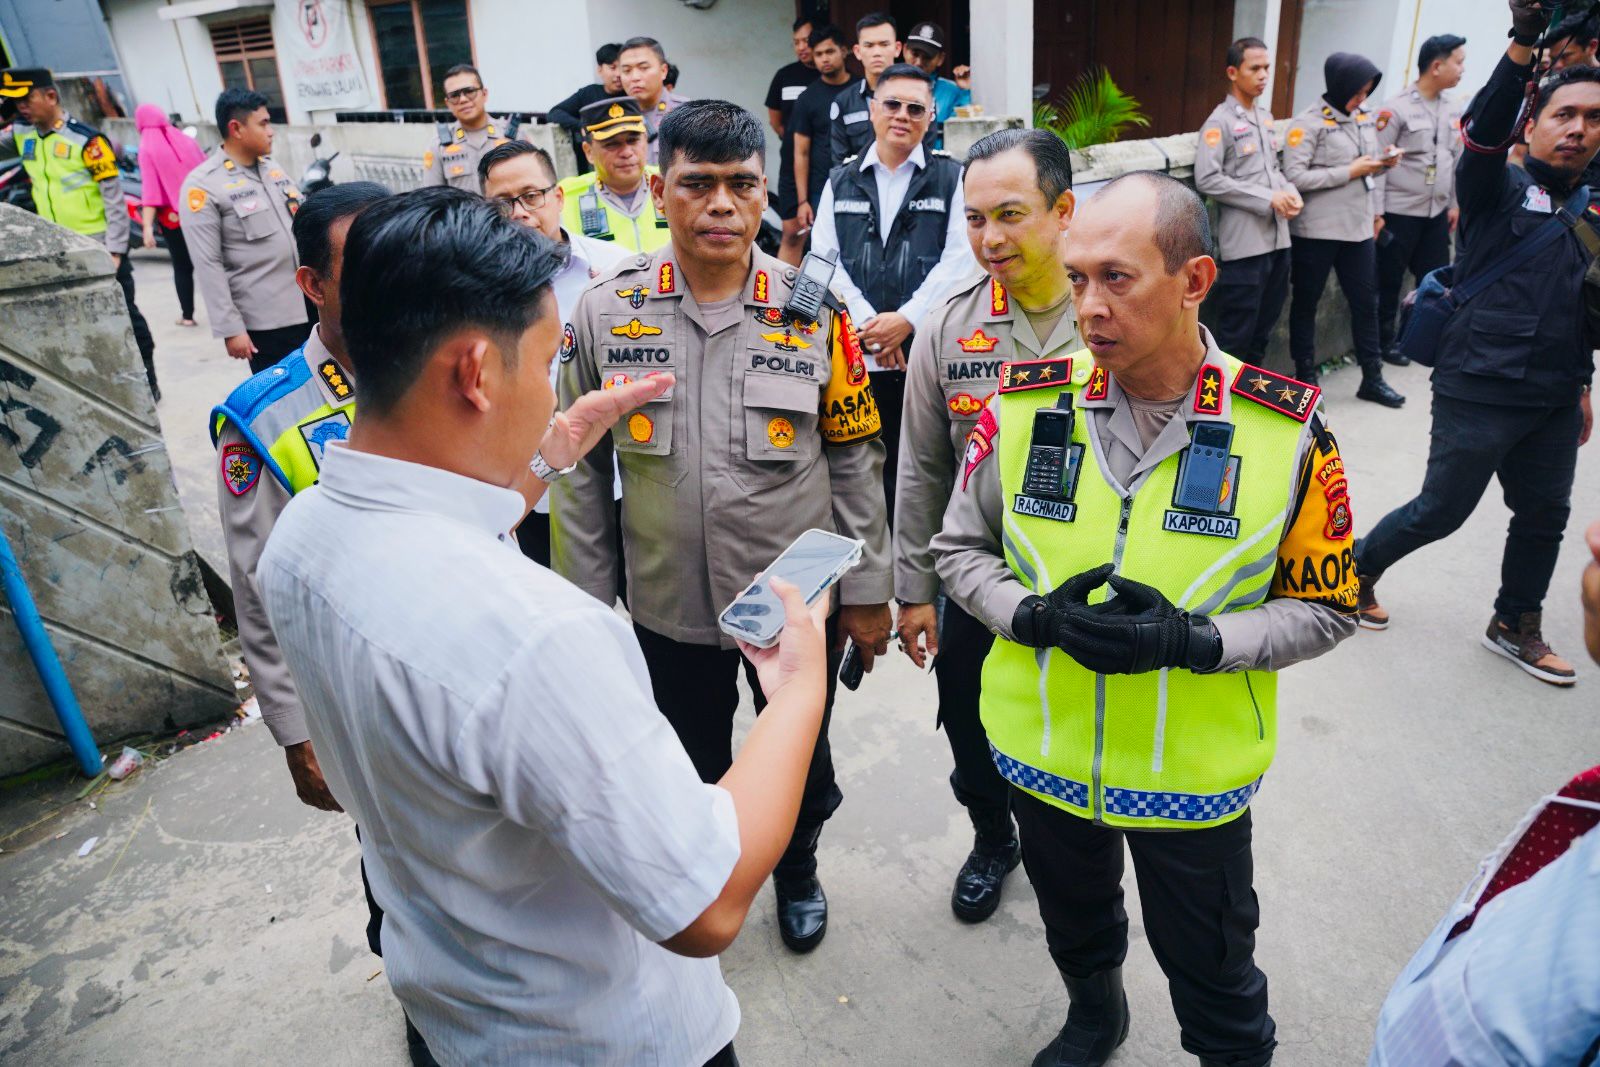 Tinjau TPS di Palembang, Kapolda Sumsel Pastikan Kamtibmas dan Tahapan Pemilu Berjalan Tertib